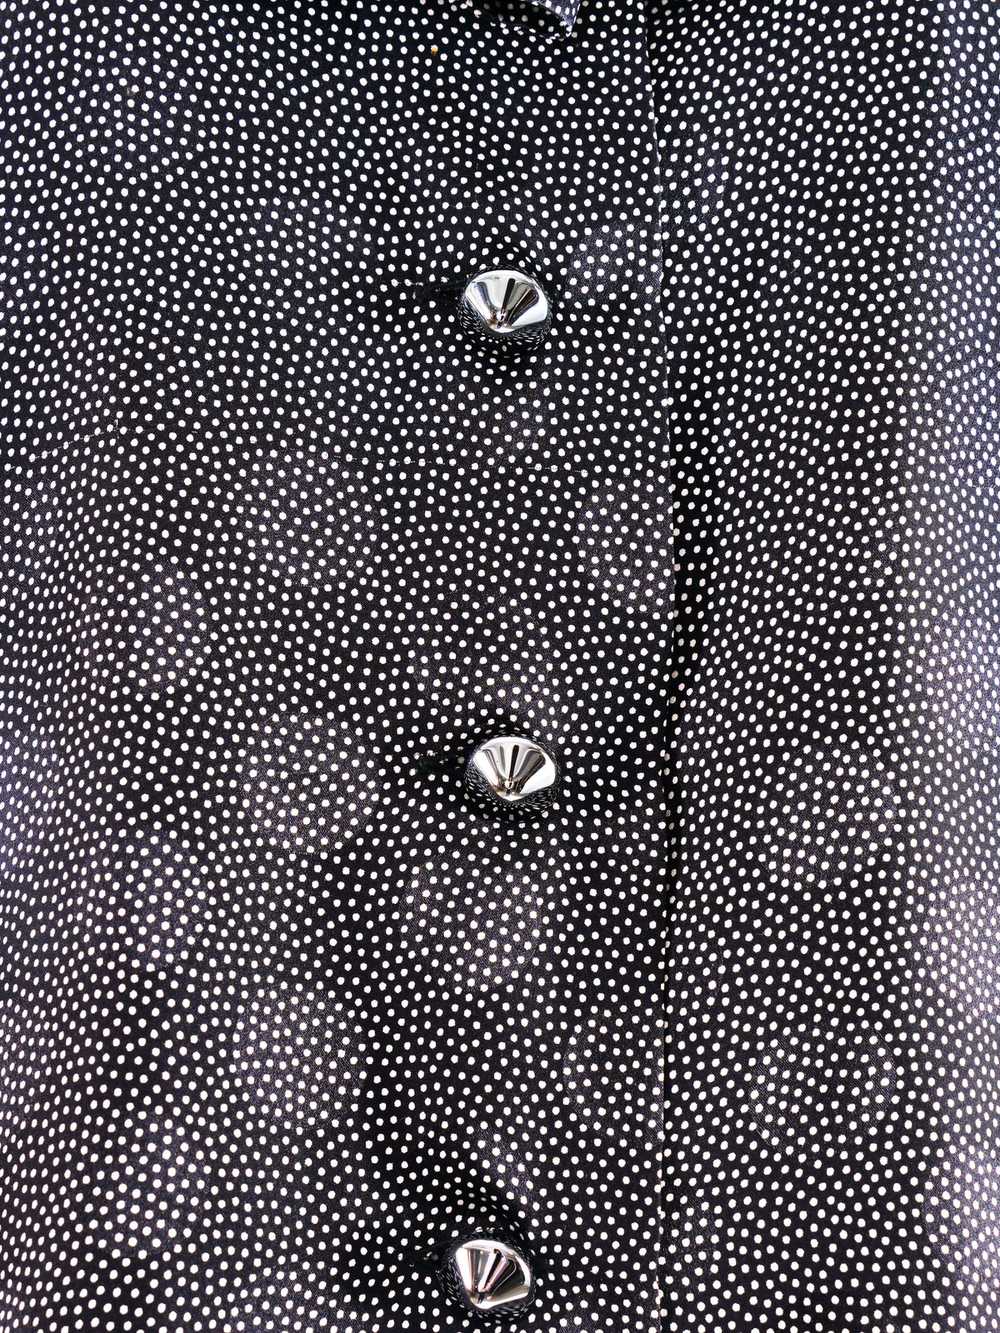 Givenchy Dot Printed Silk Top - image 2